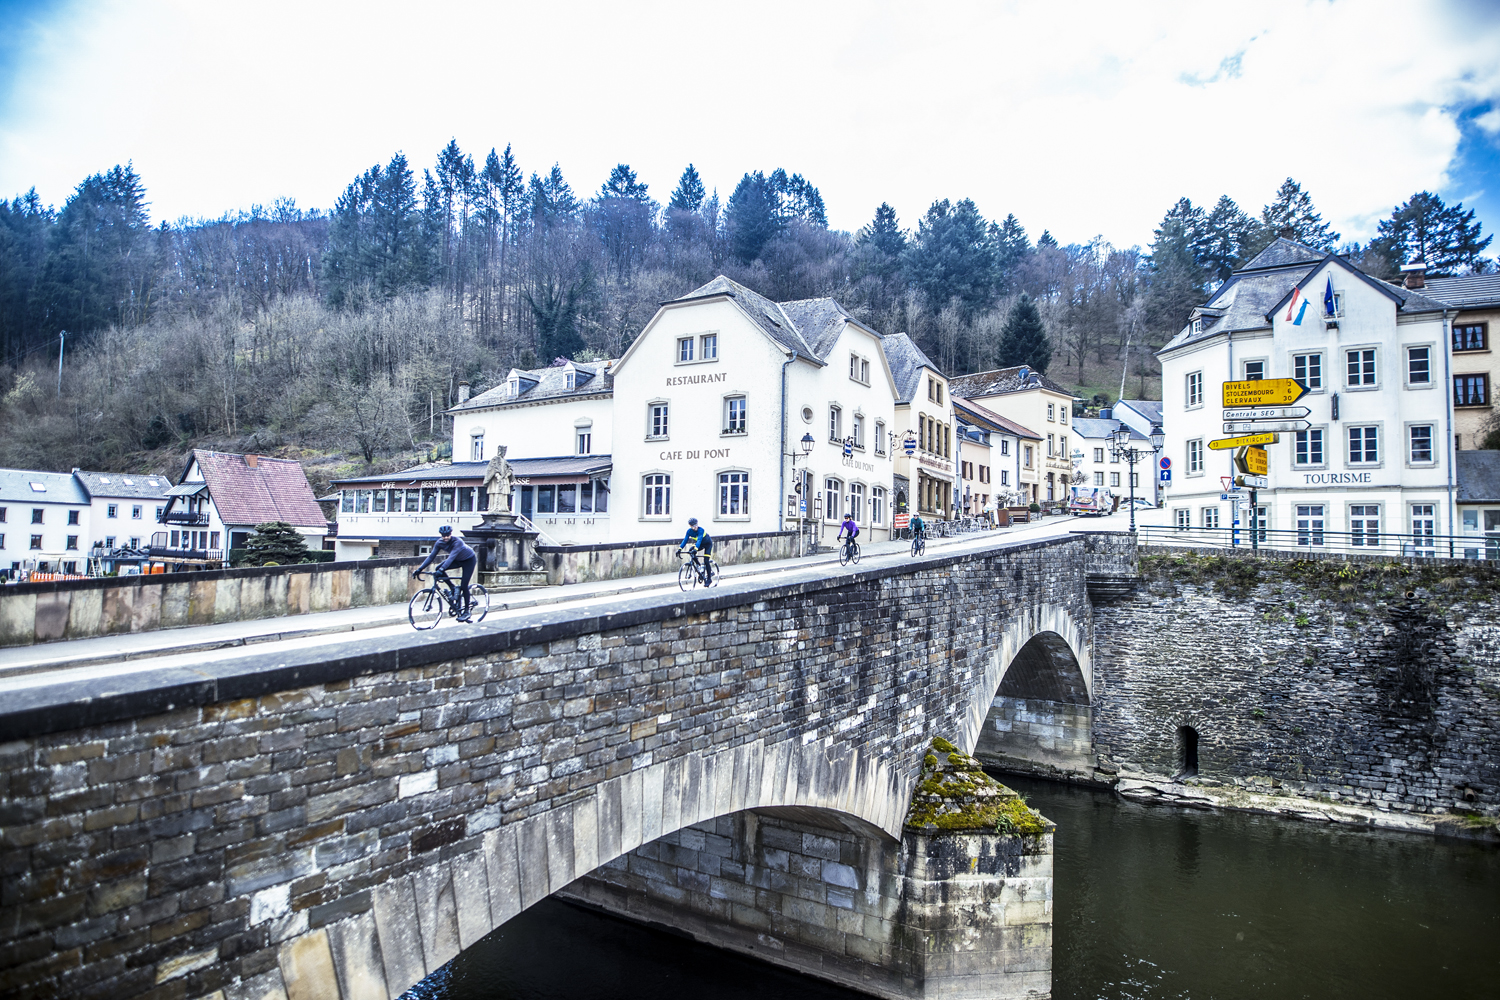 Een groep wielrenners komt fietsend over een brug, het dorp uit, omringd door groen en water.